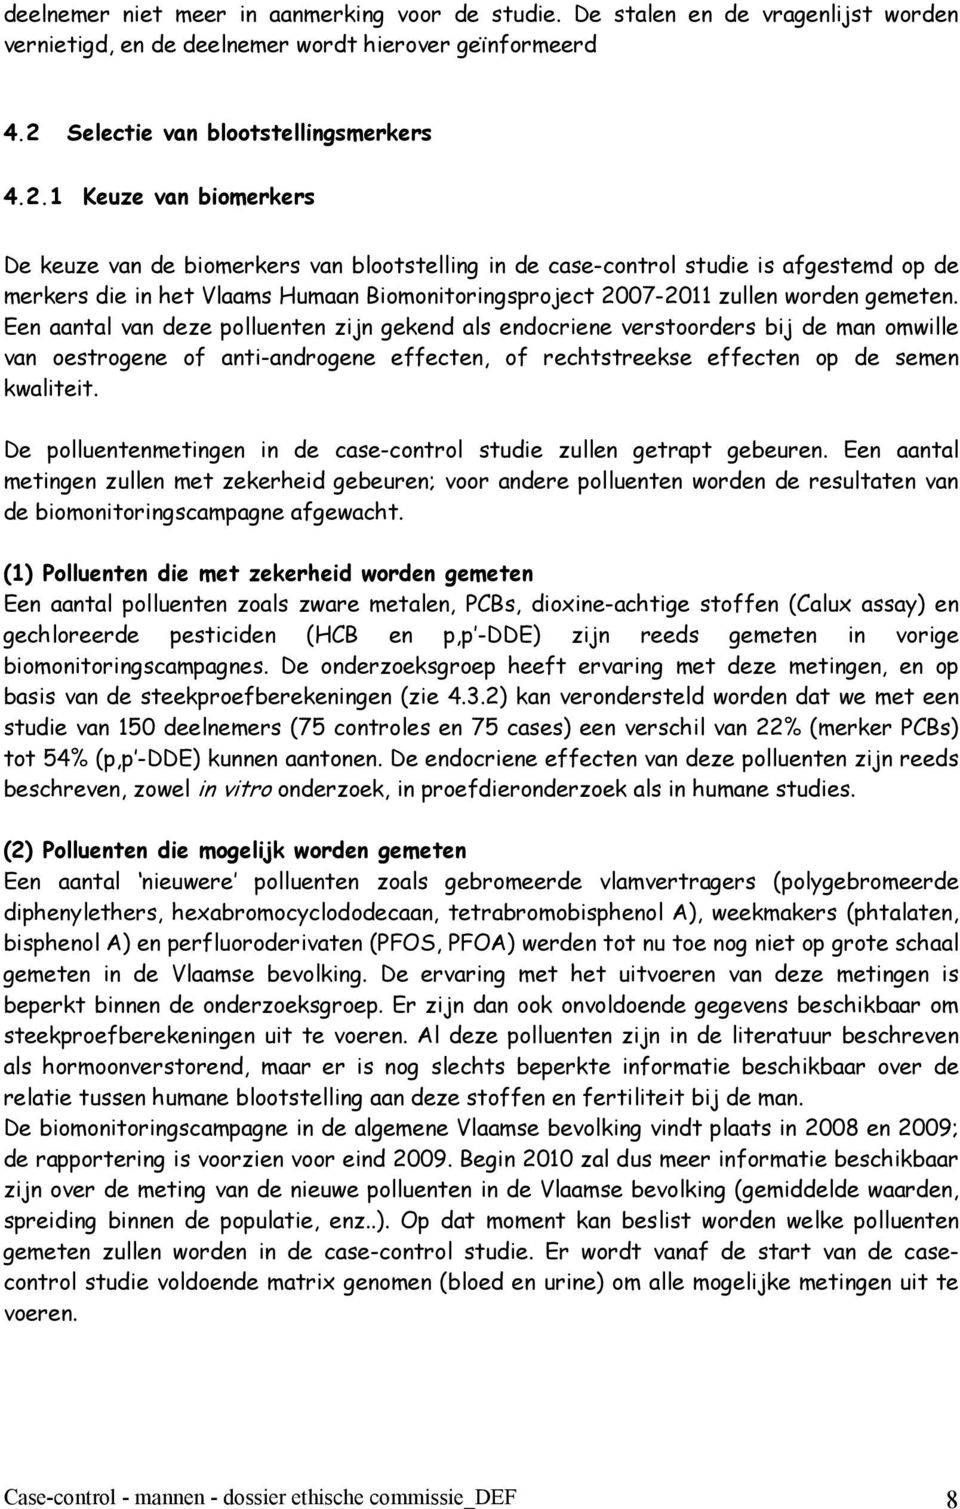 1 Keuze van biomerkers De keuze van de biomerkers van blootstelling in de case-control studie is afgestemd op de merkers die in het Vlaams Humaan Biomonitoringsproject 2007-2011 zullen worden gemeten.